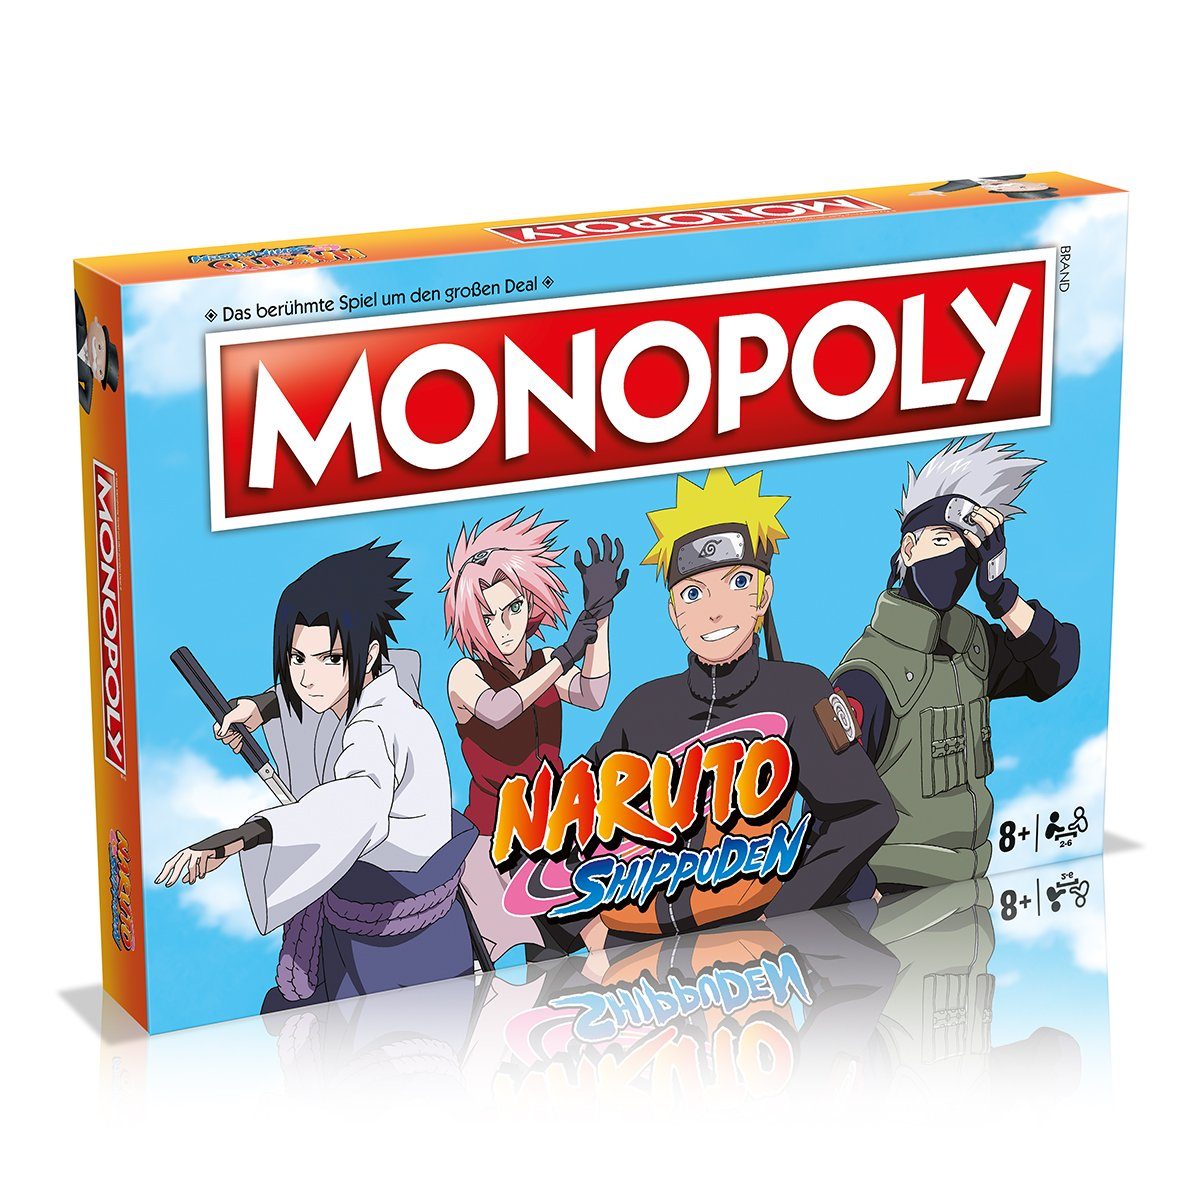 Winning Brettspiel Spiel, Gesellschaftsspiel (deutsch) Moves Brettspiel Naruto Monopoly